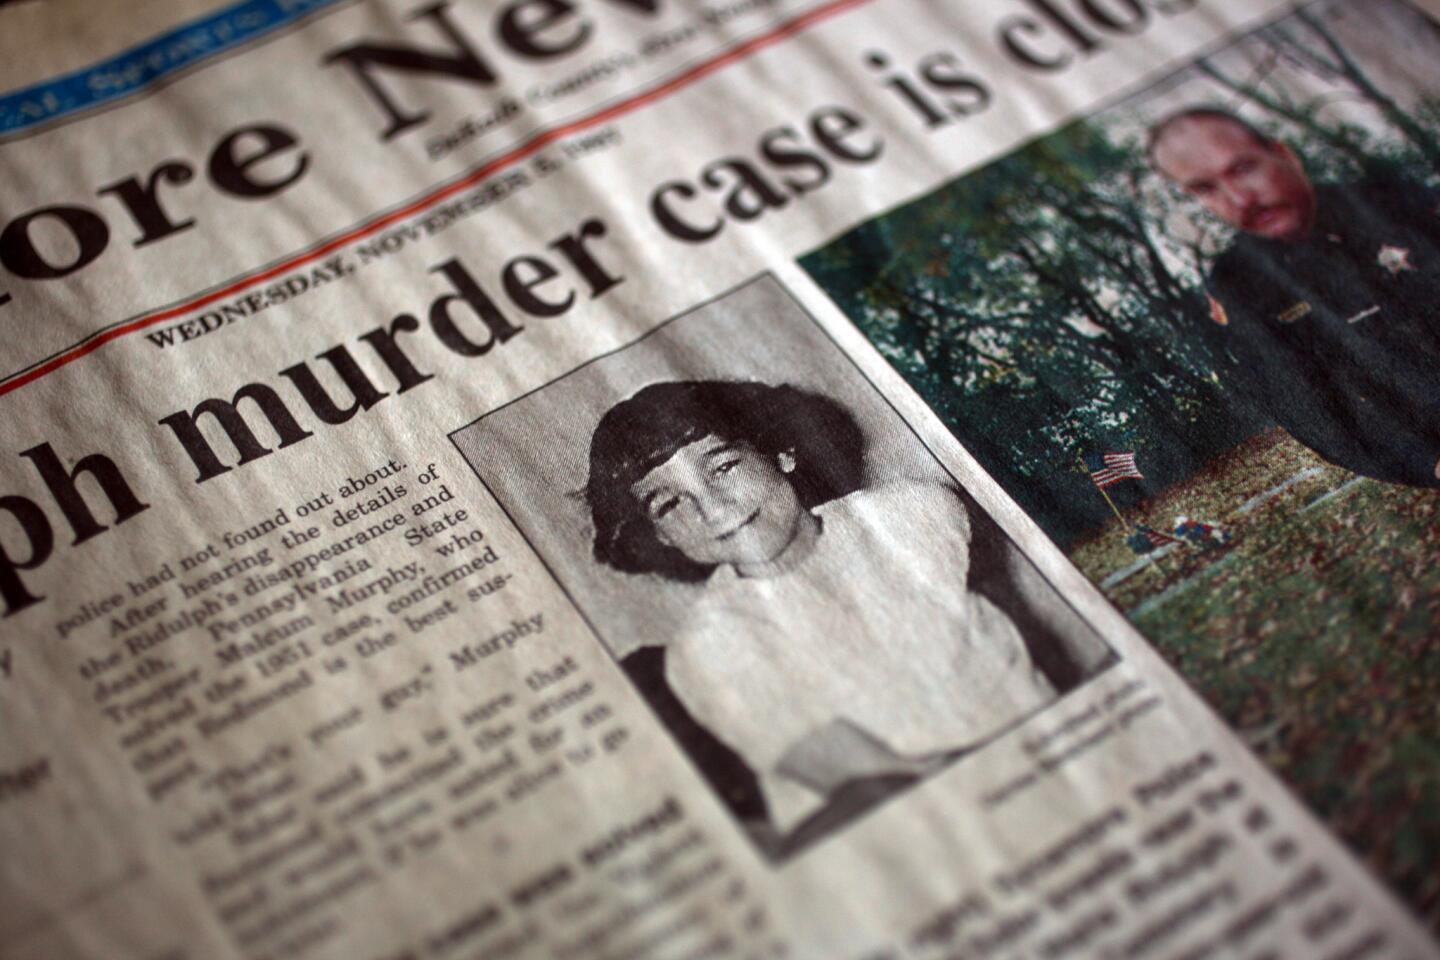 1957 Sycamore murder case